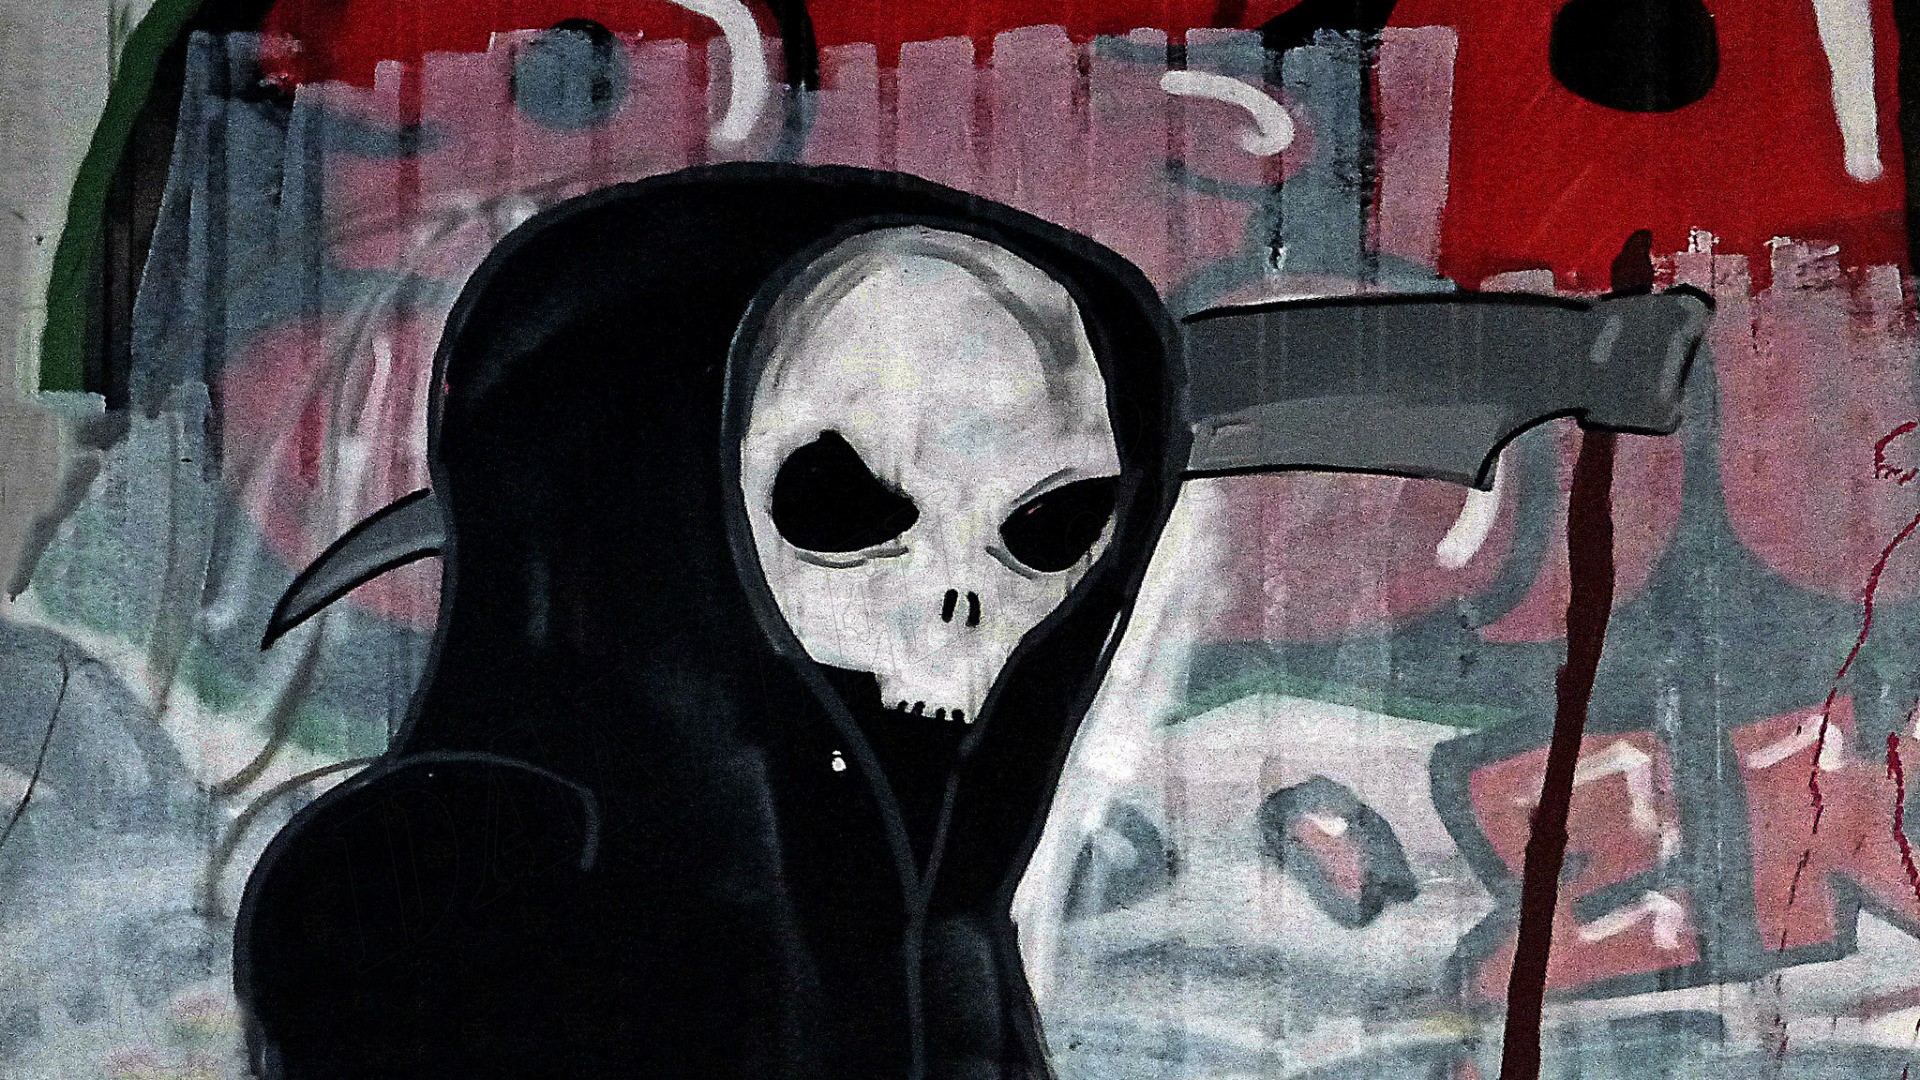 Wallpaper Artwork of grim reaper